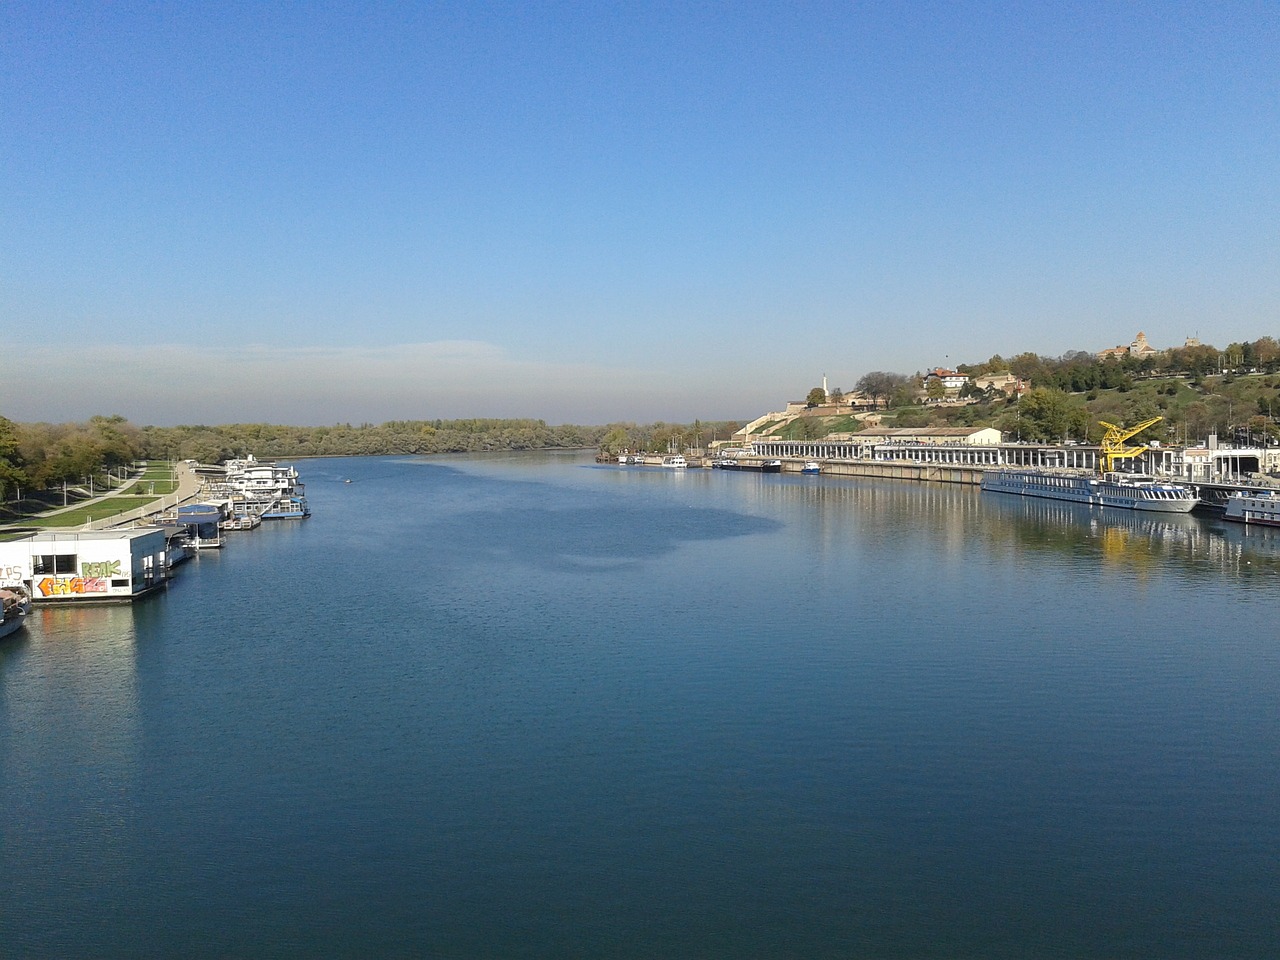 Voda u Dunavu i Savi u Beogradu bezbedna za kupanje